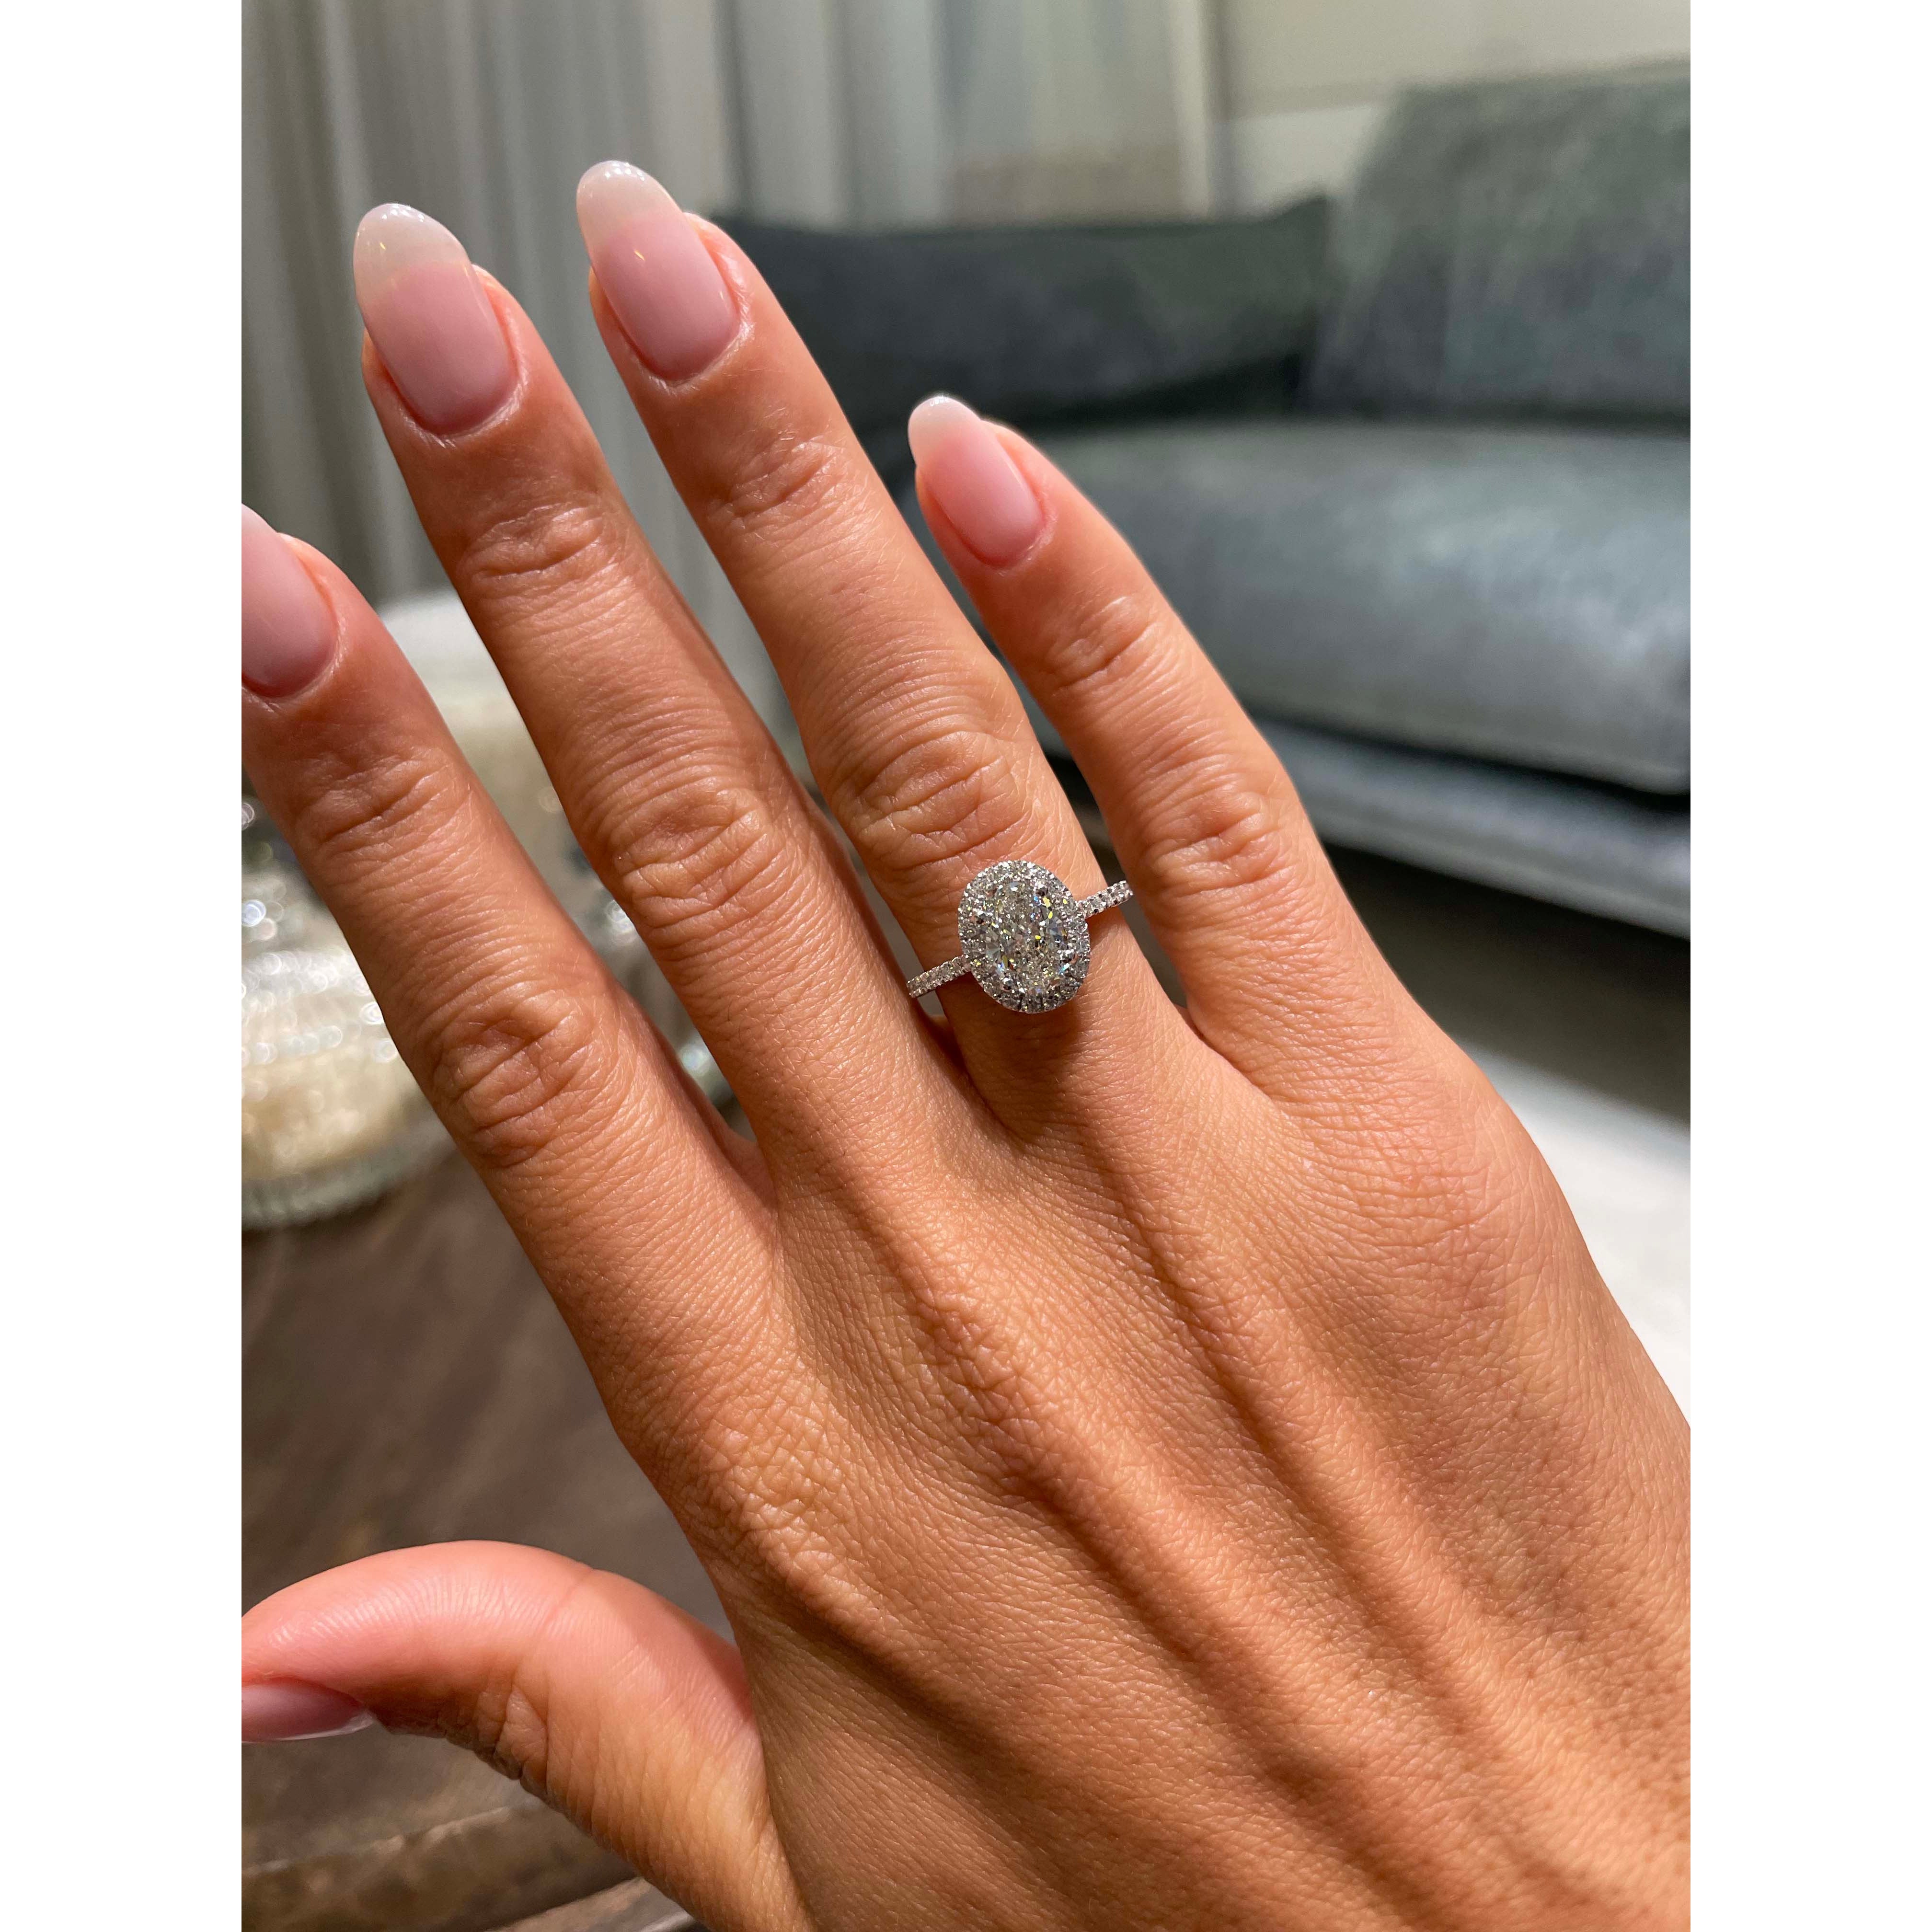 Maria Lab Grown Diamond Ring   (1.3 Carat) - 18K White Gold